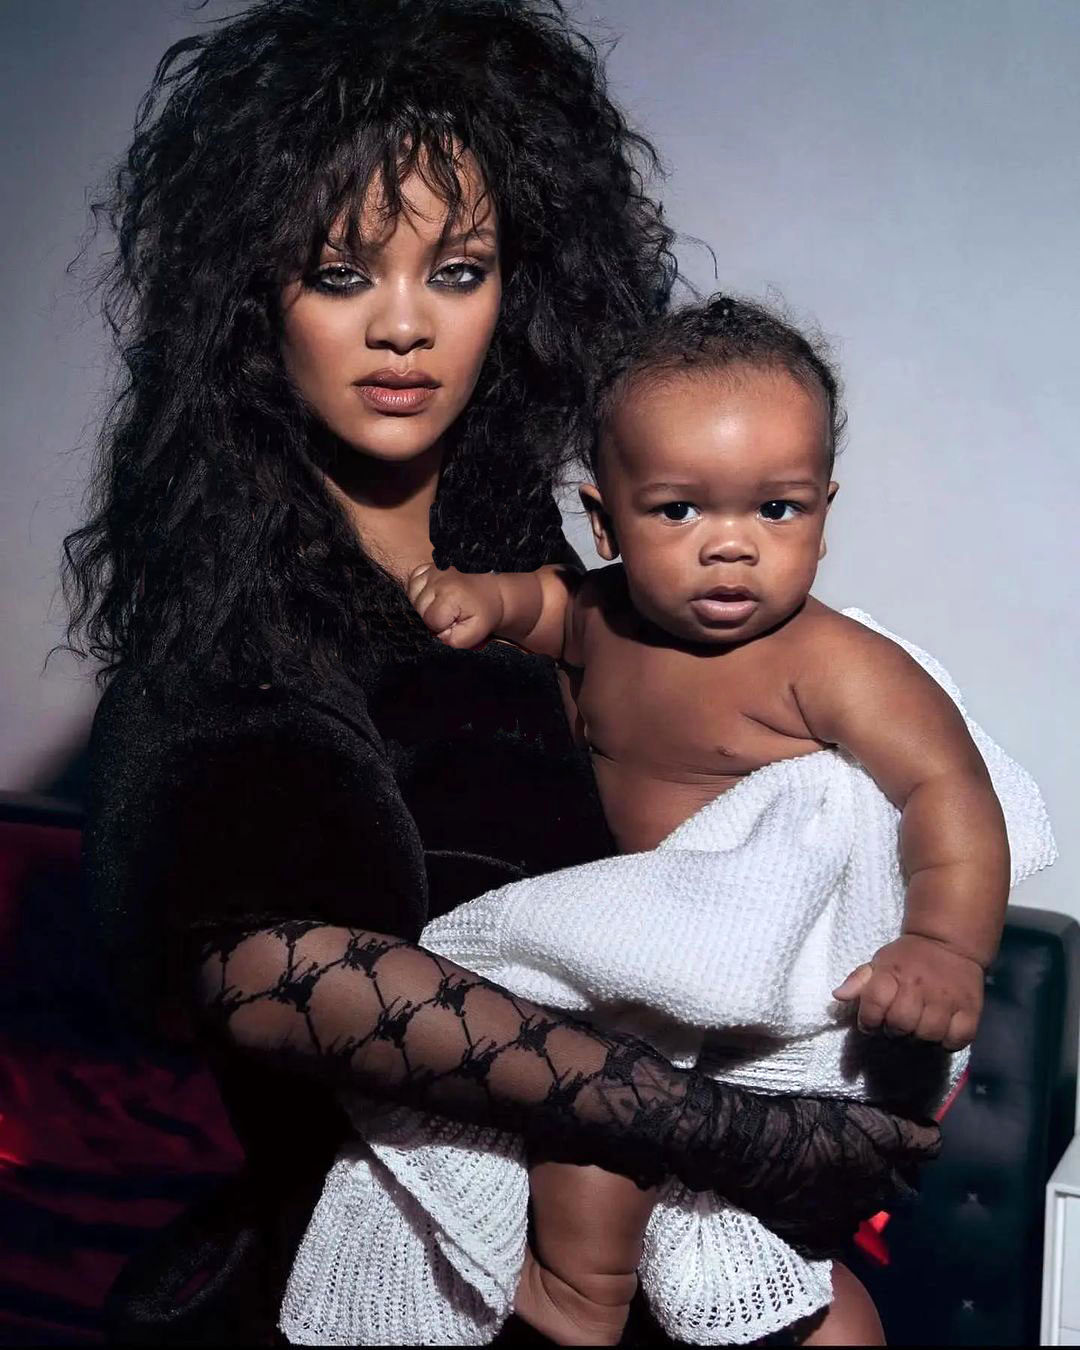 ریانا خواننده مشهور از چهره فرزندش رونمایی کرد+ عکس